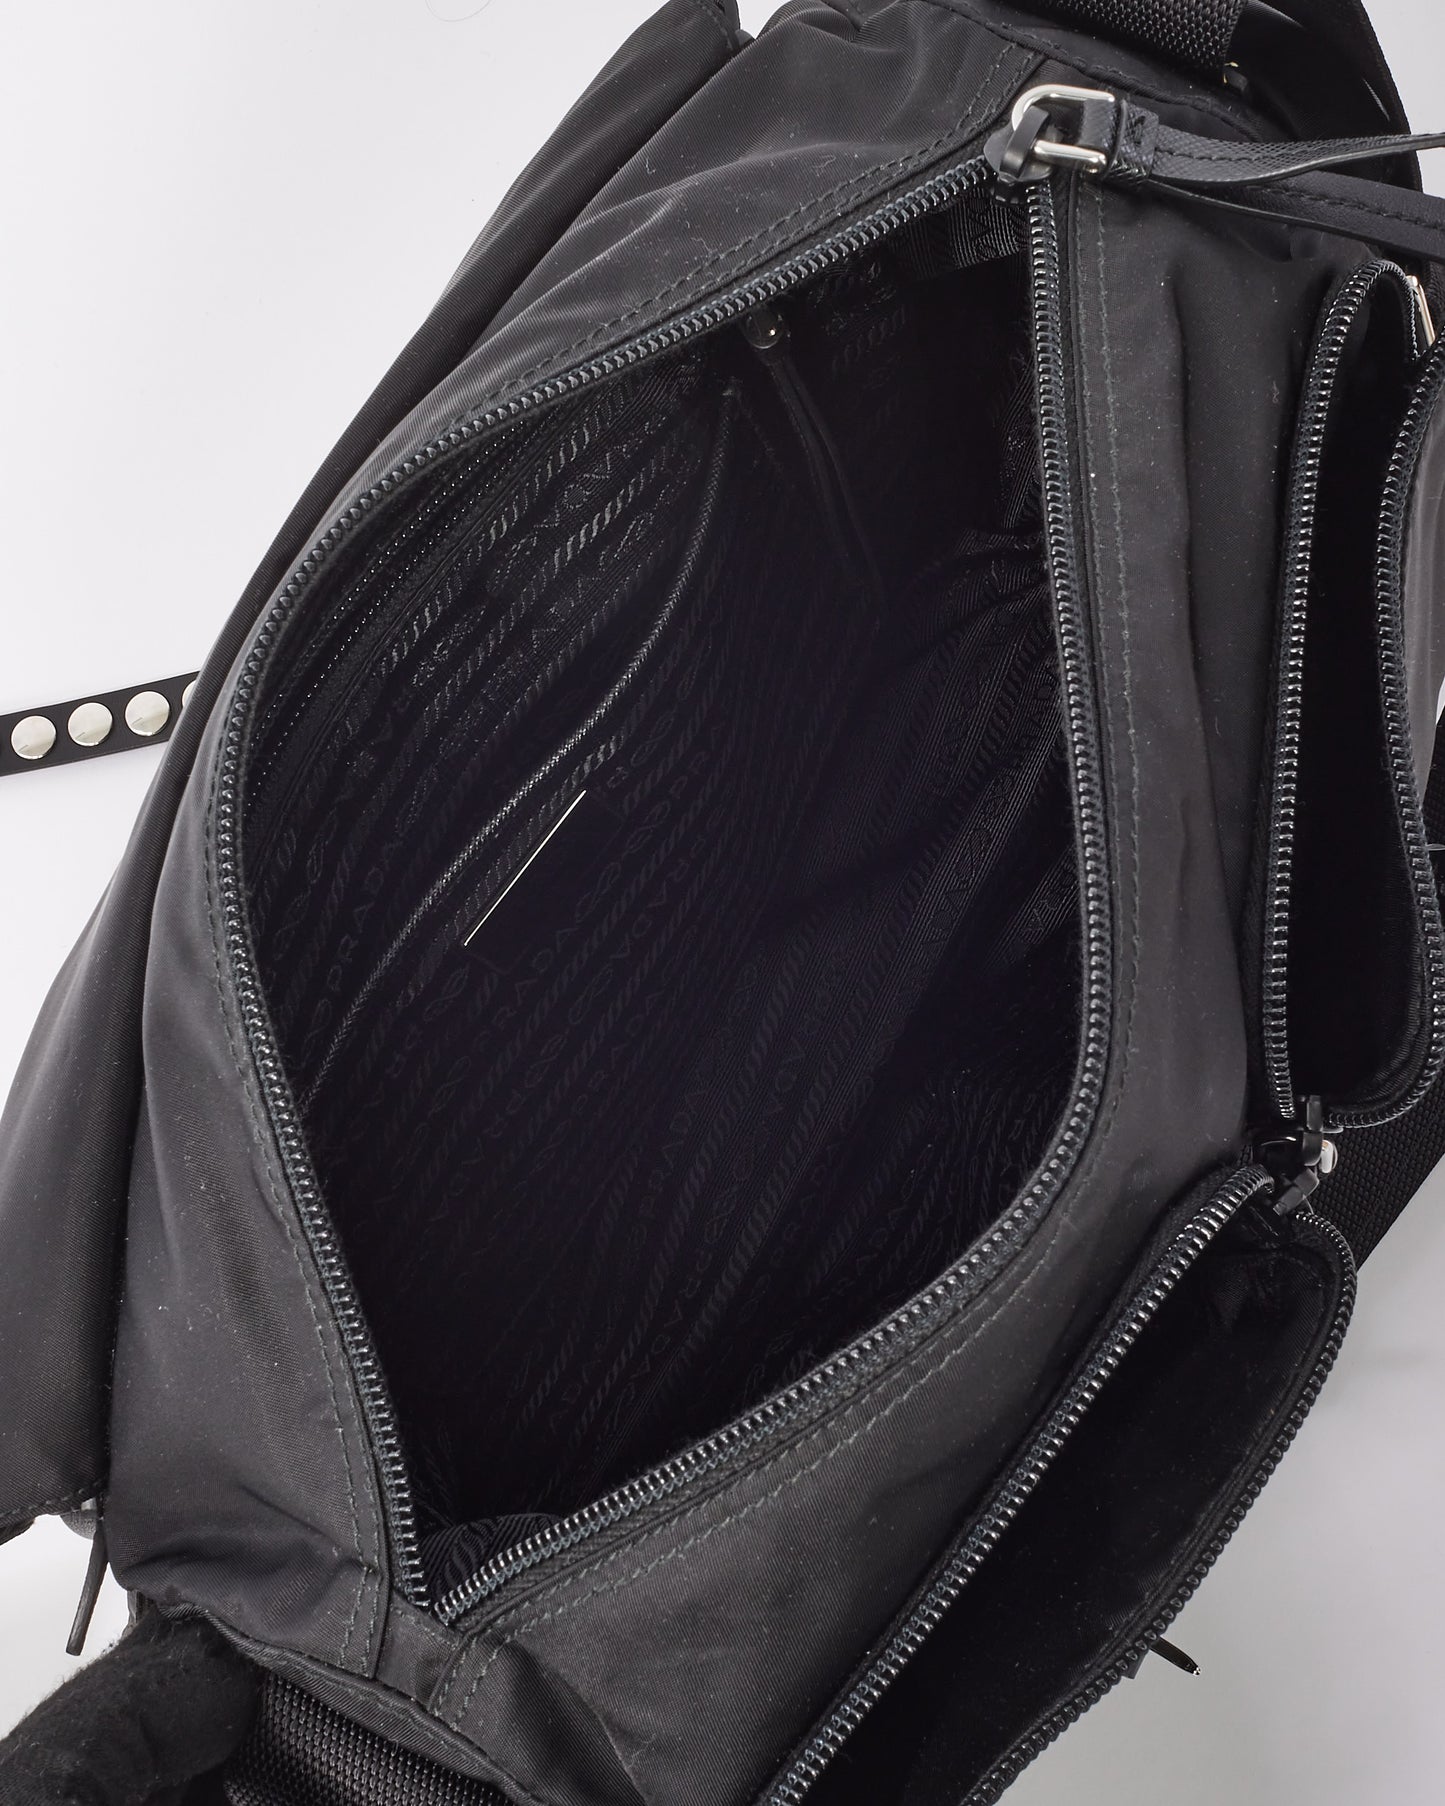 Prada Black New Vela Nylon Studded Messenger Bag